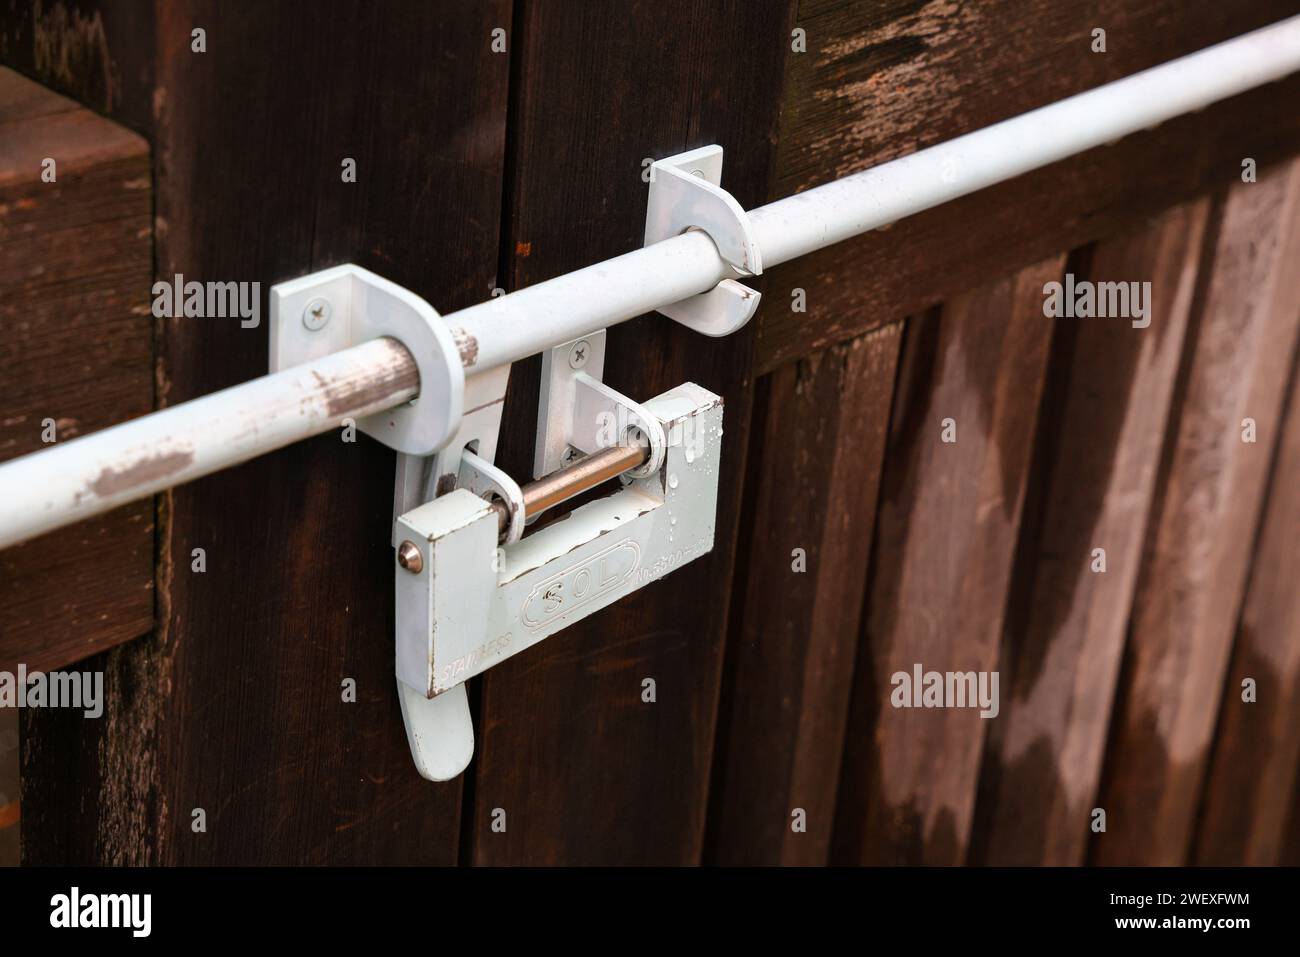 Serratura in vecchio stile giapponese sulla porta. chiudere la porta di legno. Tradizionale serratura giapponese appesa alla porta di legno. Foto Stock